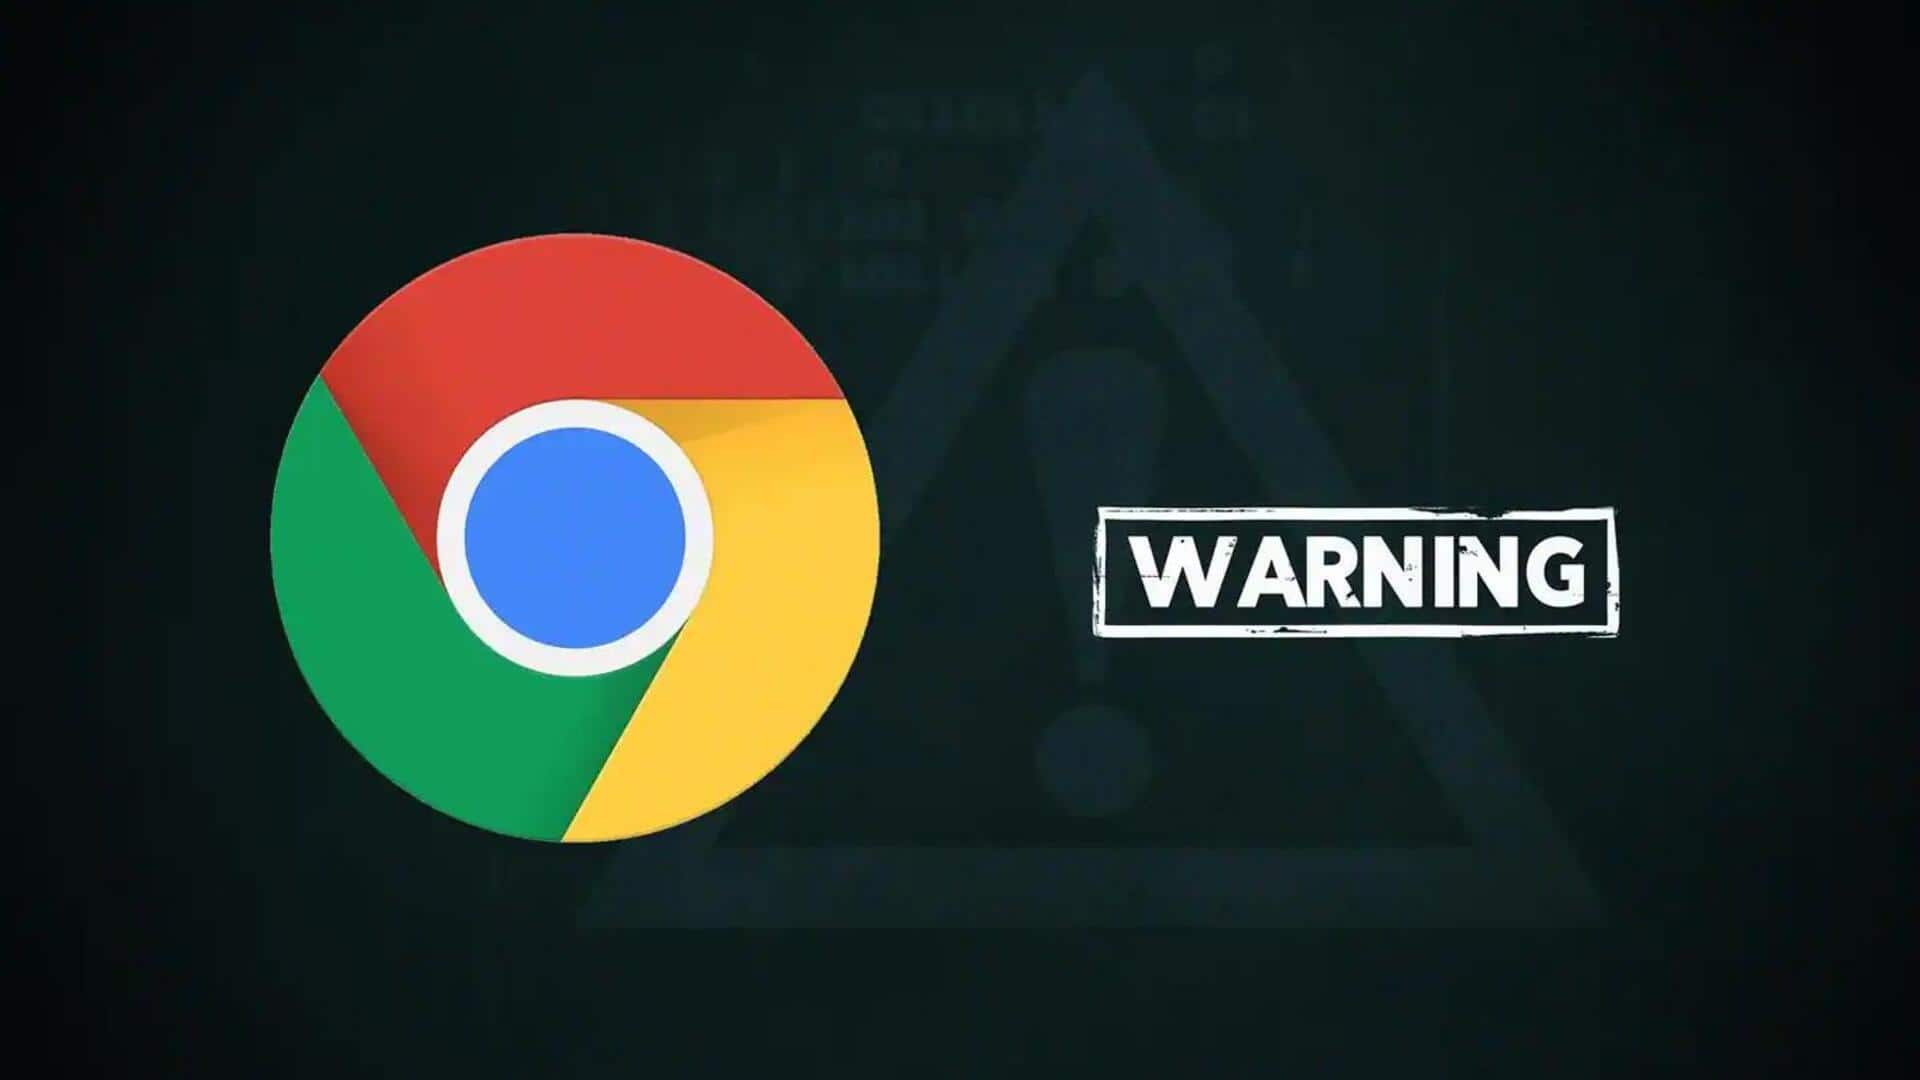 गूगल क्रोम के डेस्कटॉप ऐप पर साइबर हमले का खतरा, ऐसे रहें सुरक्षित